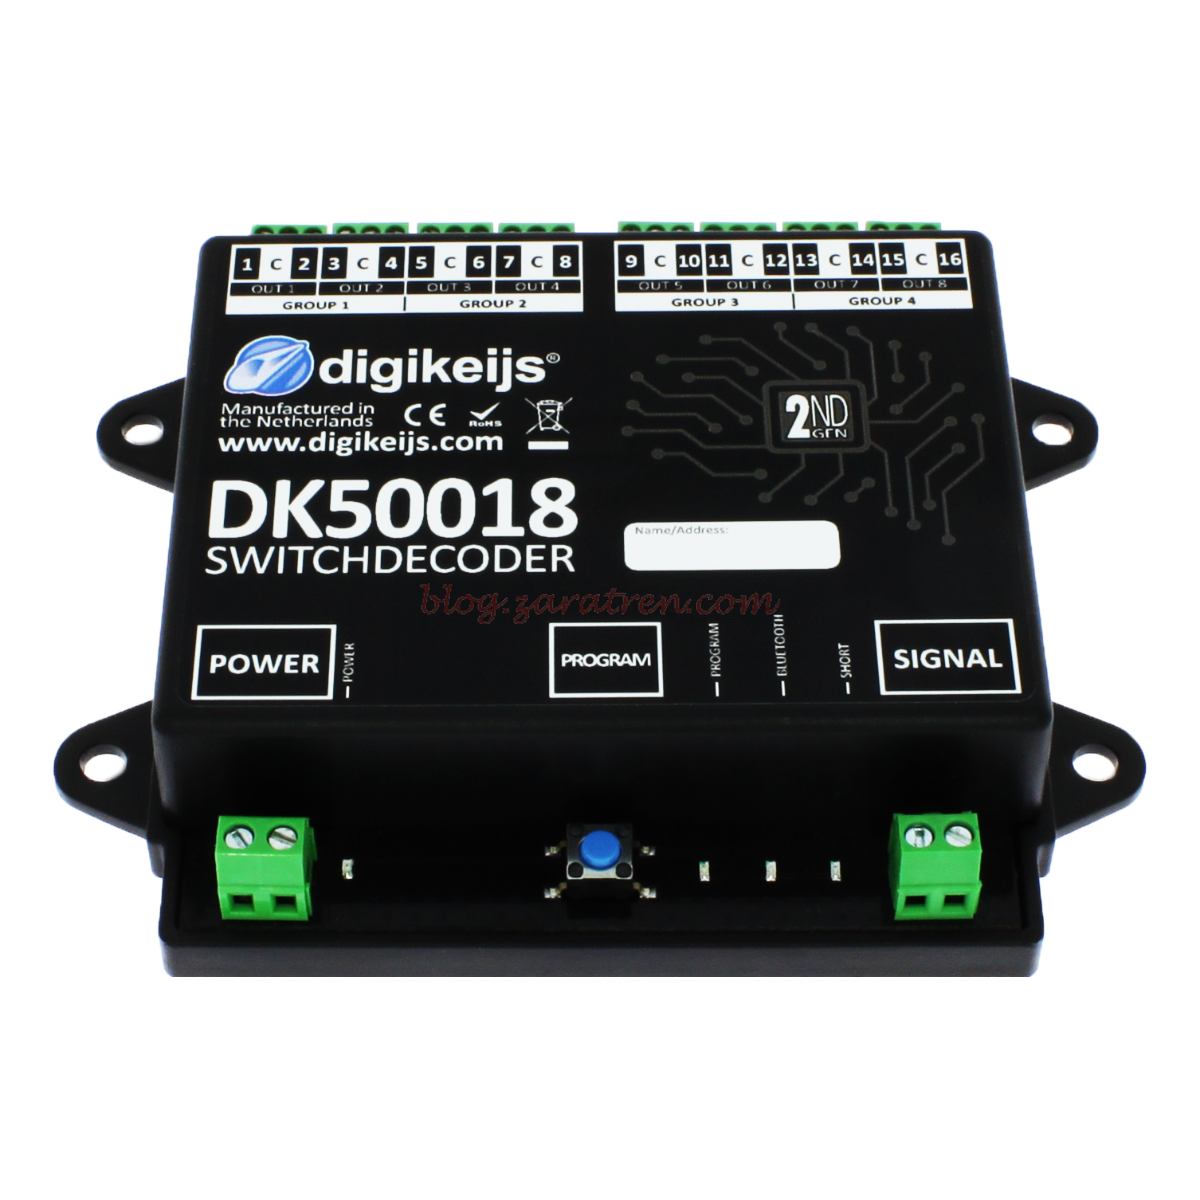 Digikeijs – Decodificador de 16 canales, 8 salidas, Programable por Bluetooth, Ref: DK50018.